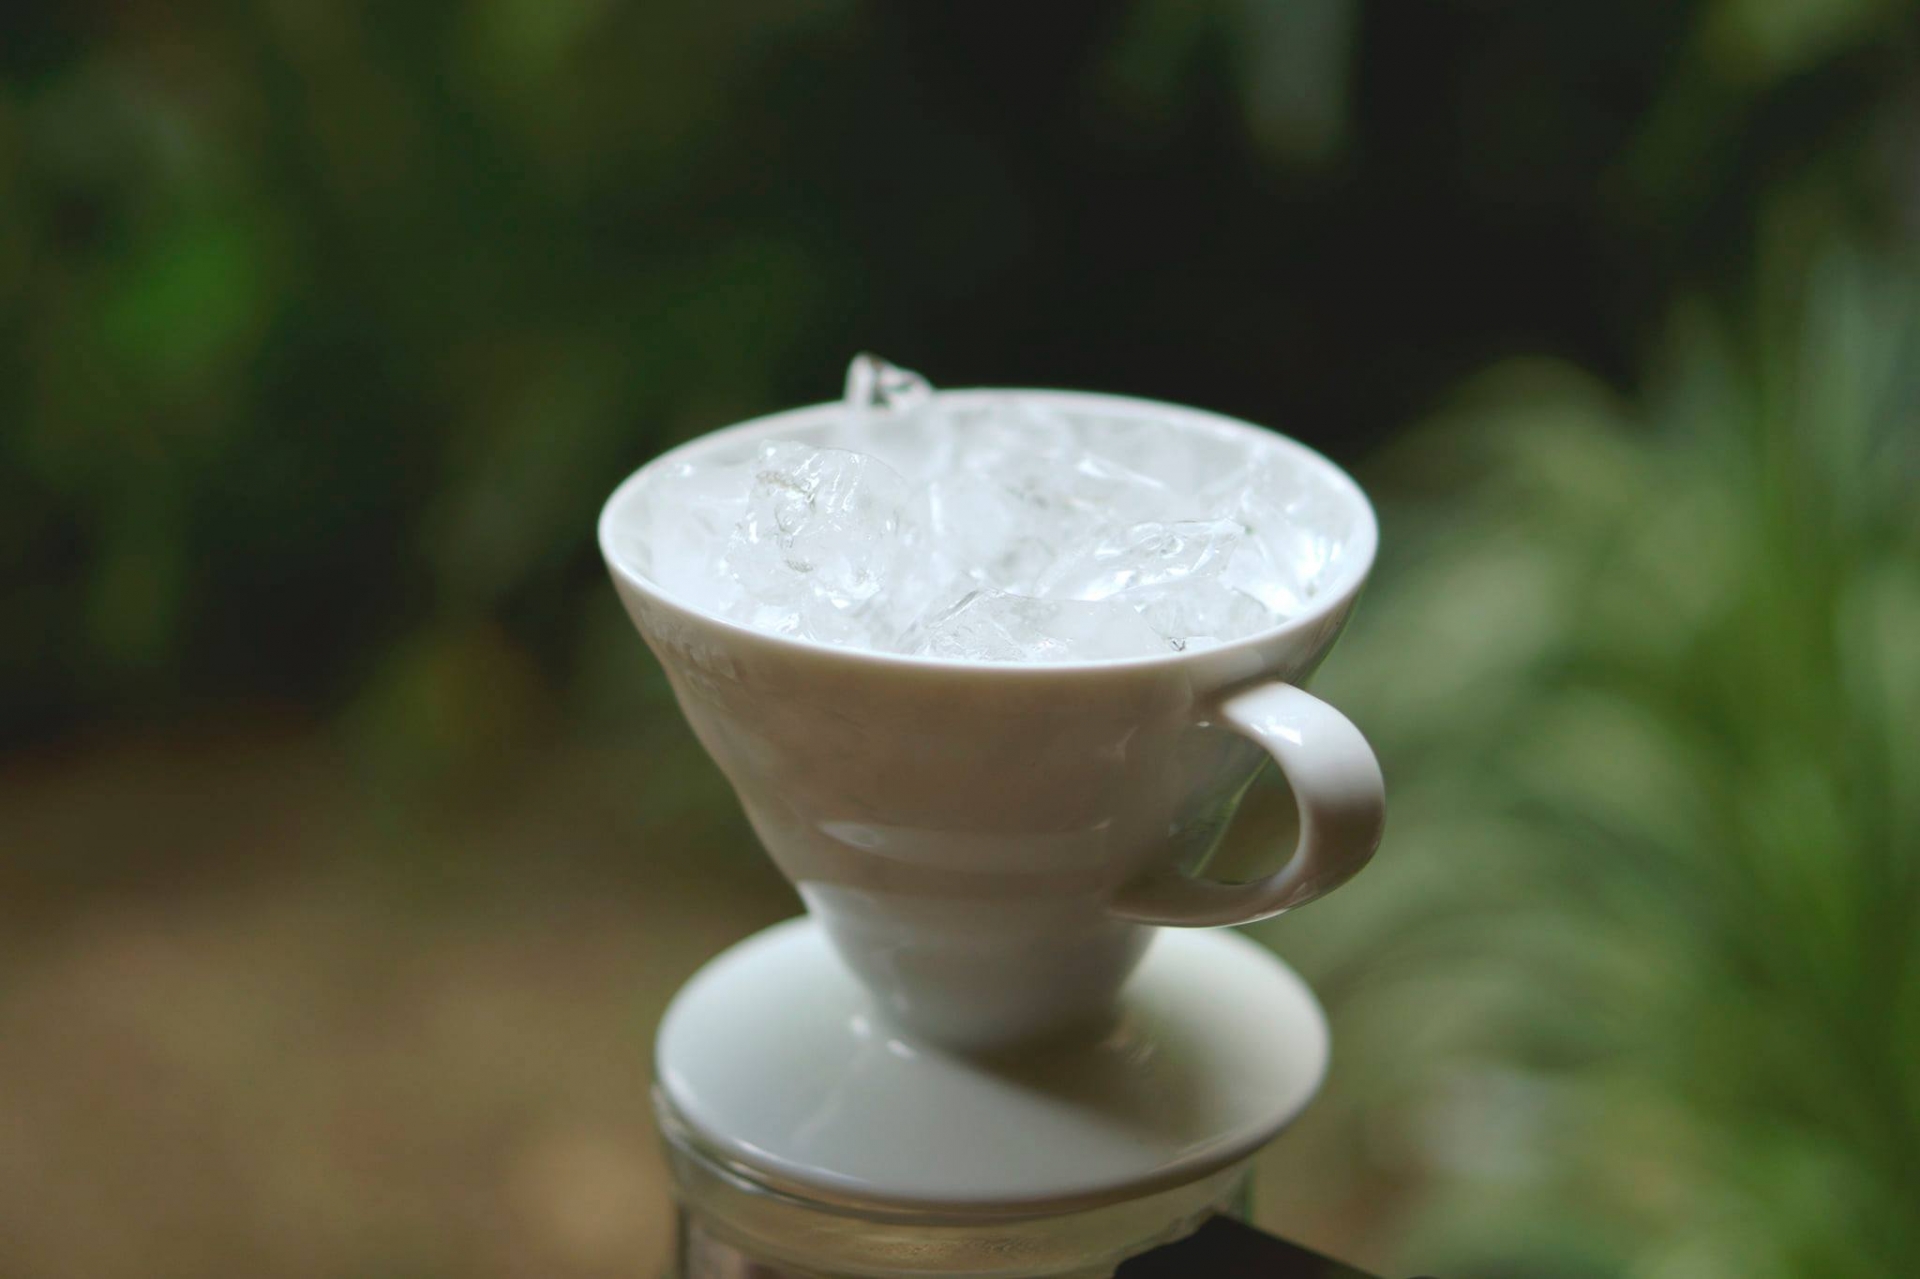 Cách làm trà ủ lạnh - trà coldbrew cực đơn giản mà ngon ngay tại nhà - Ảnh 7